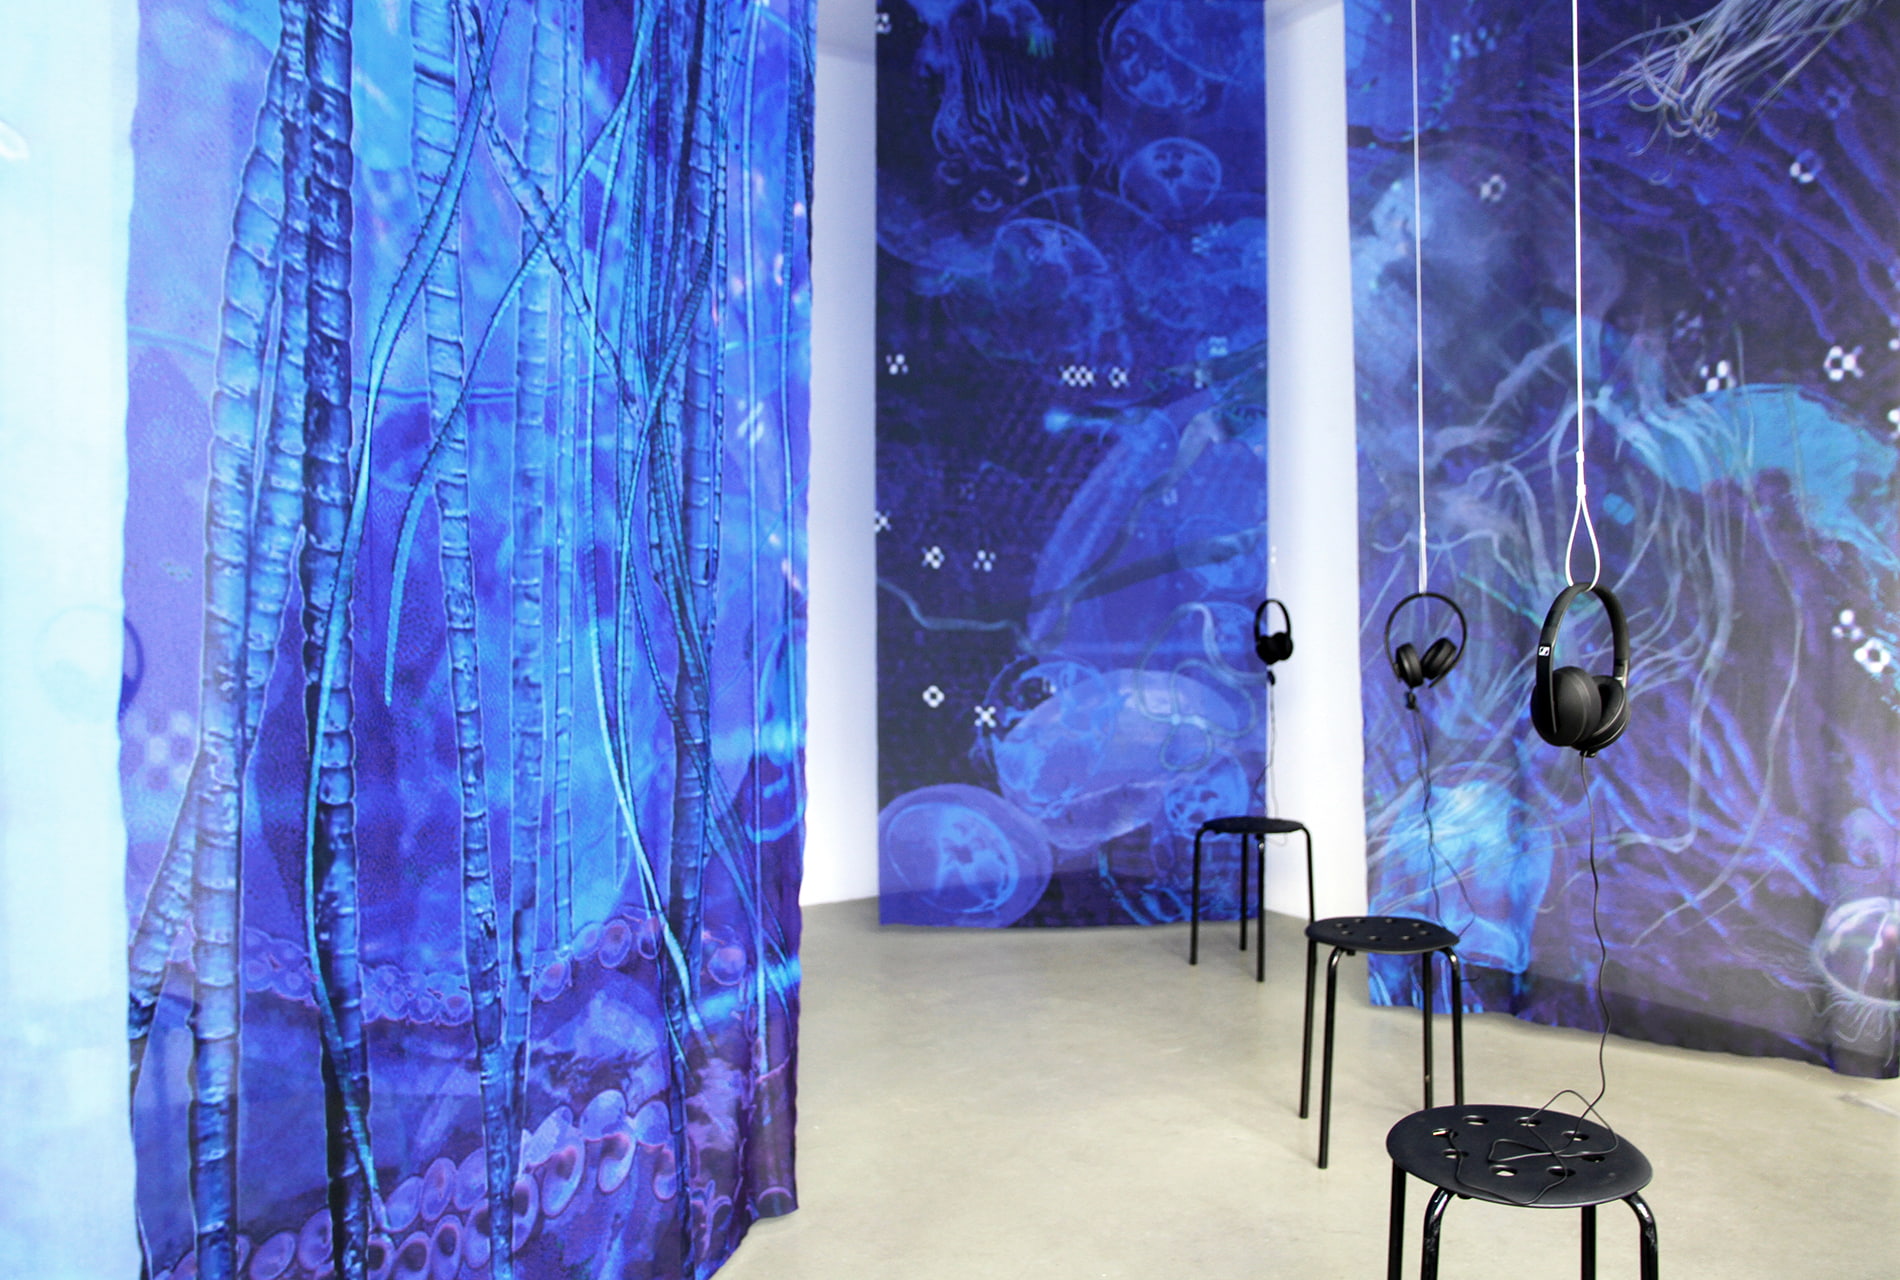 Installation view of Einen Riesigen Schwarm at Digital Art Space Munich - large-format textile banners and sound installation